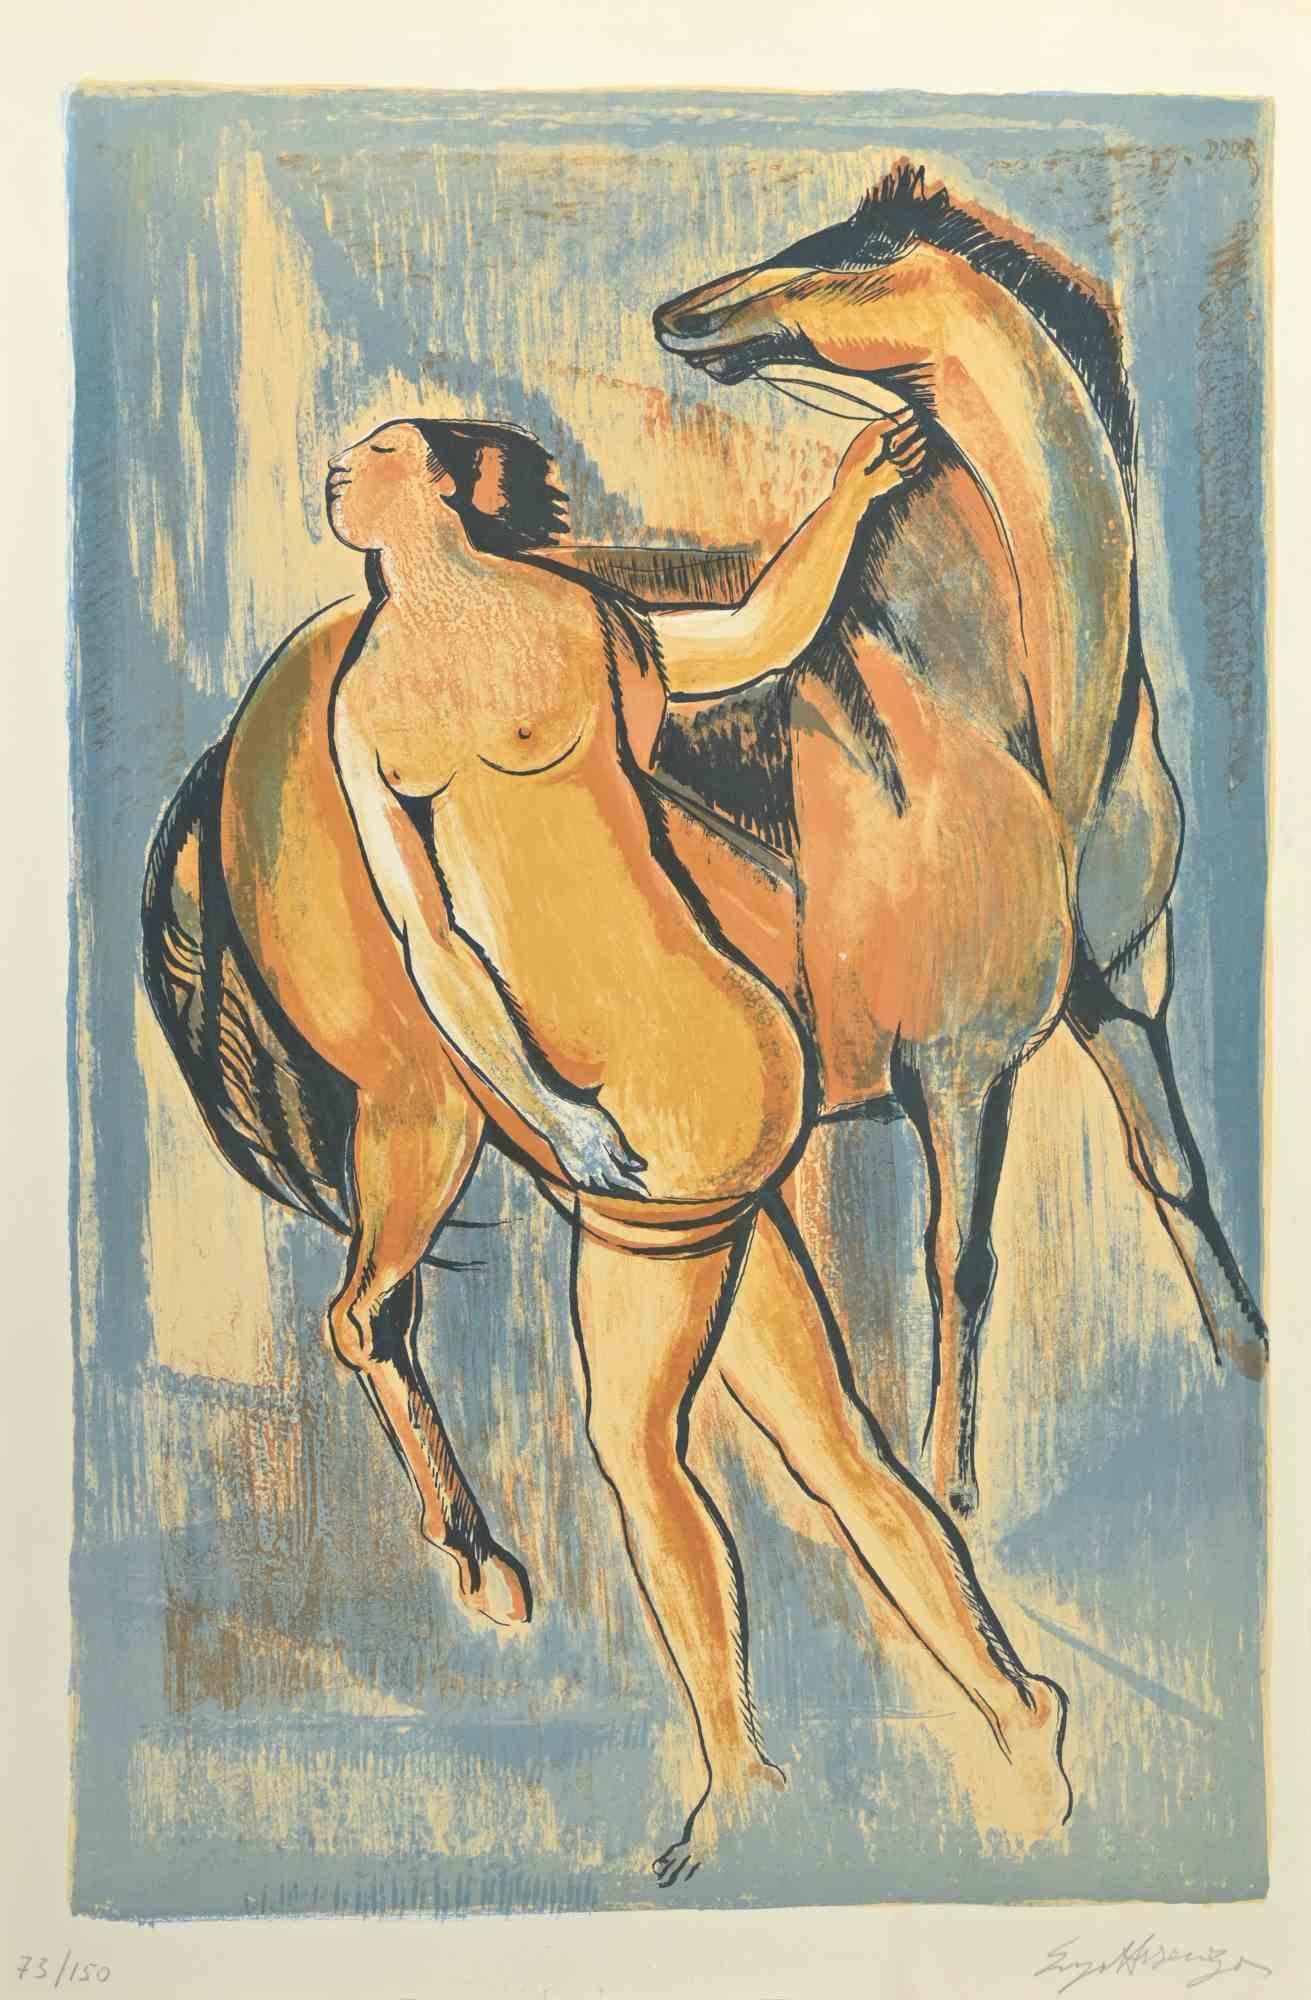 Frau mit Pferd ist ein Kunstwerk, das von Enzo Assenza realisiert wurde.

Druck in Lithographietechnik.

Vom Künstler in der rechten unteren Ecke mit Bleistift handsigniert.

Nummerierte Auflage von 150 Drucken.

Sehr guter Zustand. 